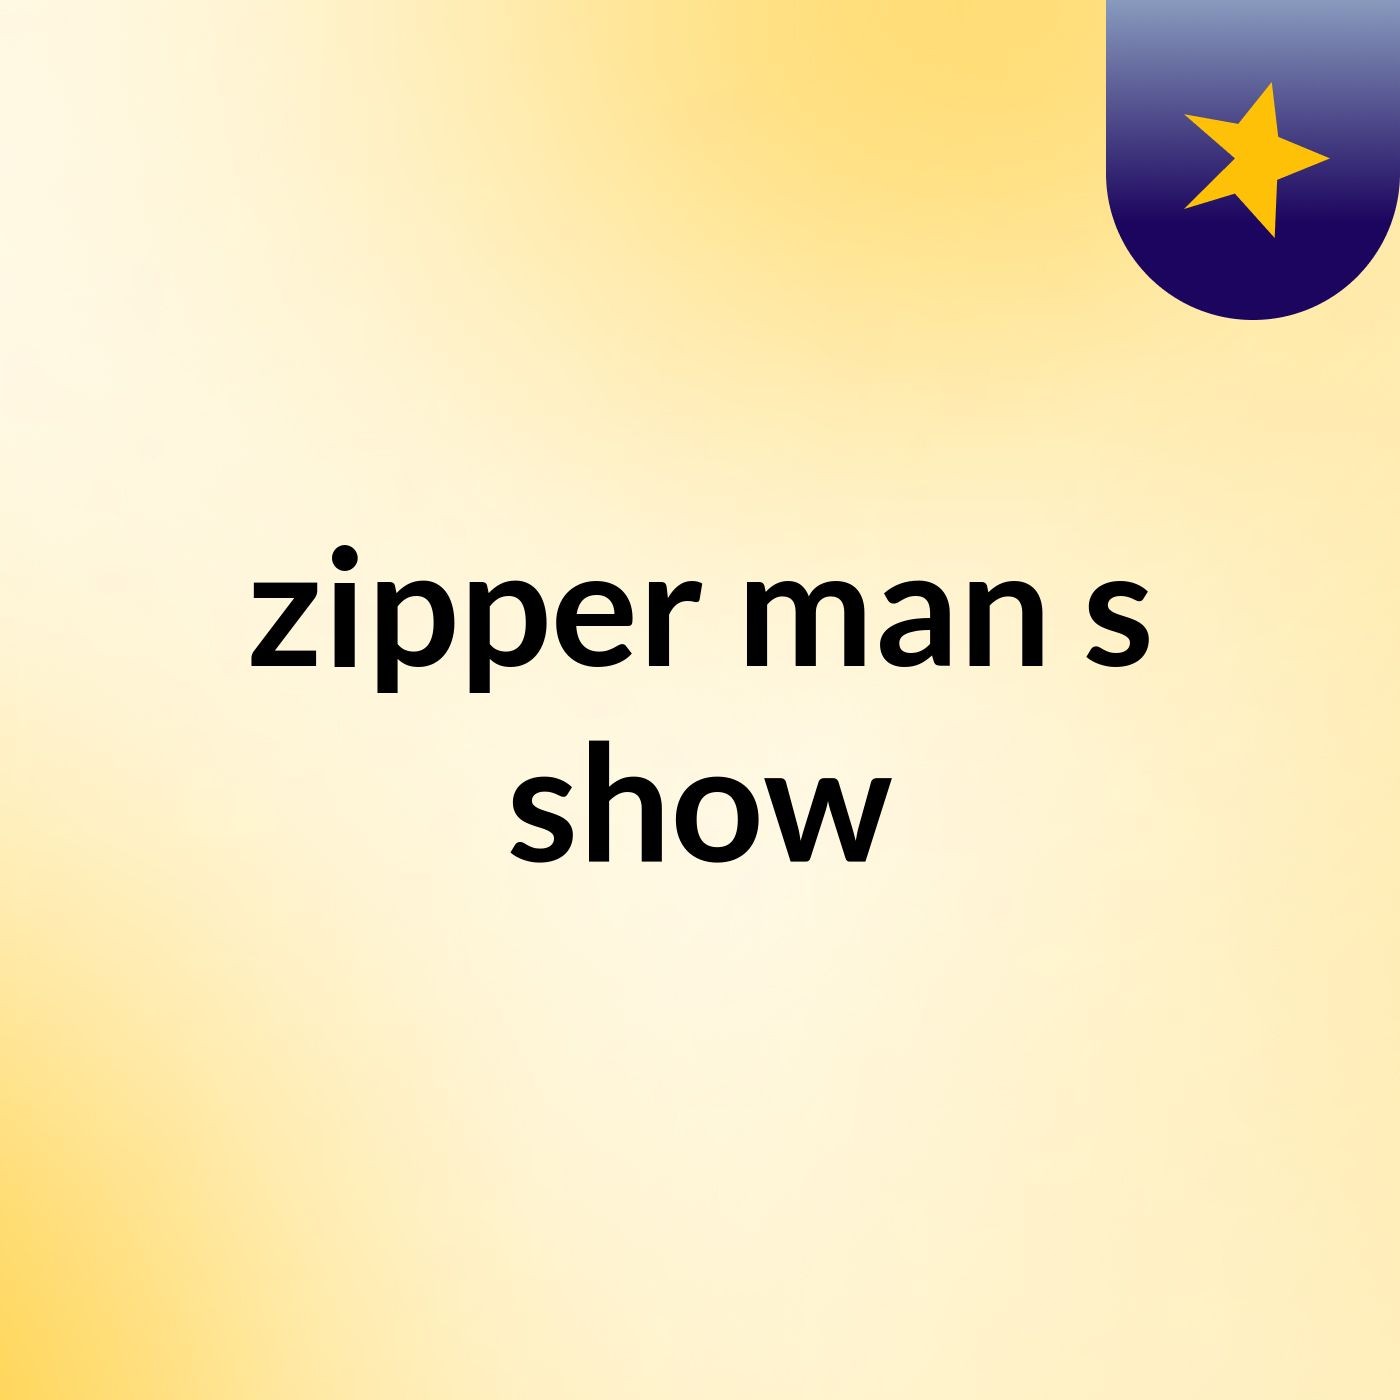 zipper man's show